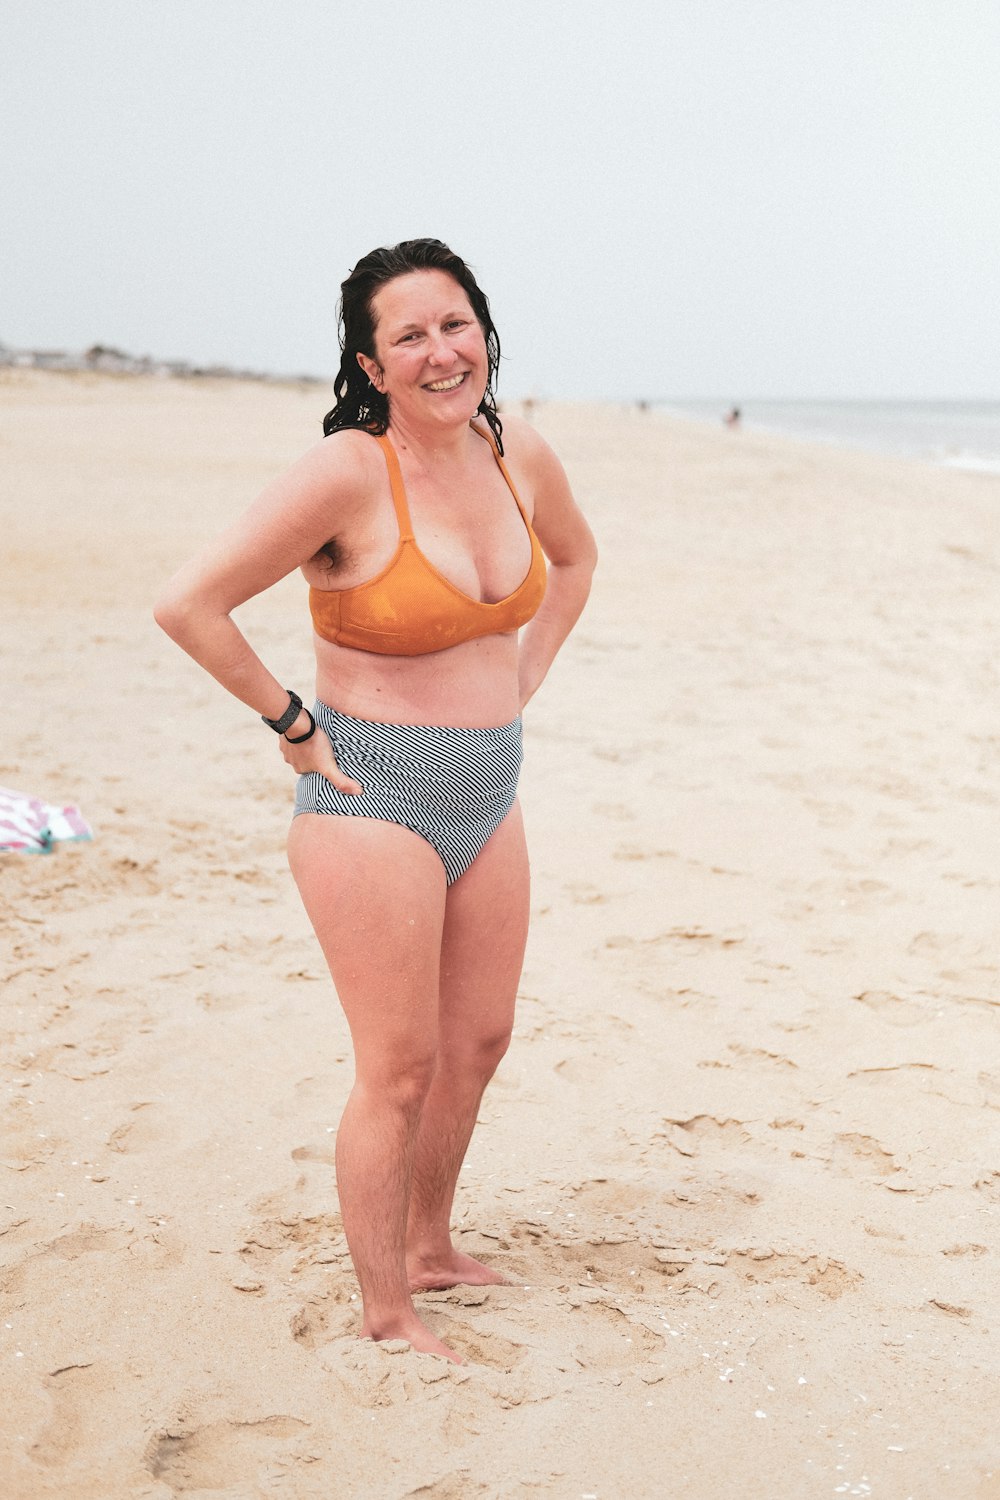 mulher no biquíni preto e branco das bolinhas que posa na praia durante o dia